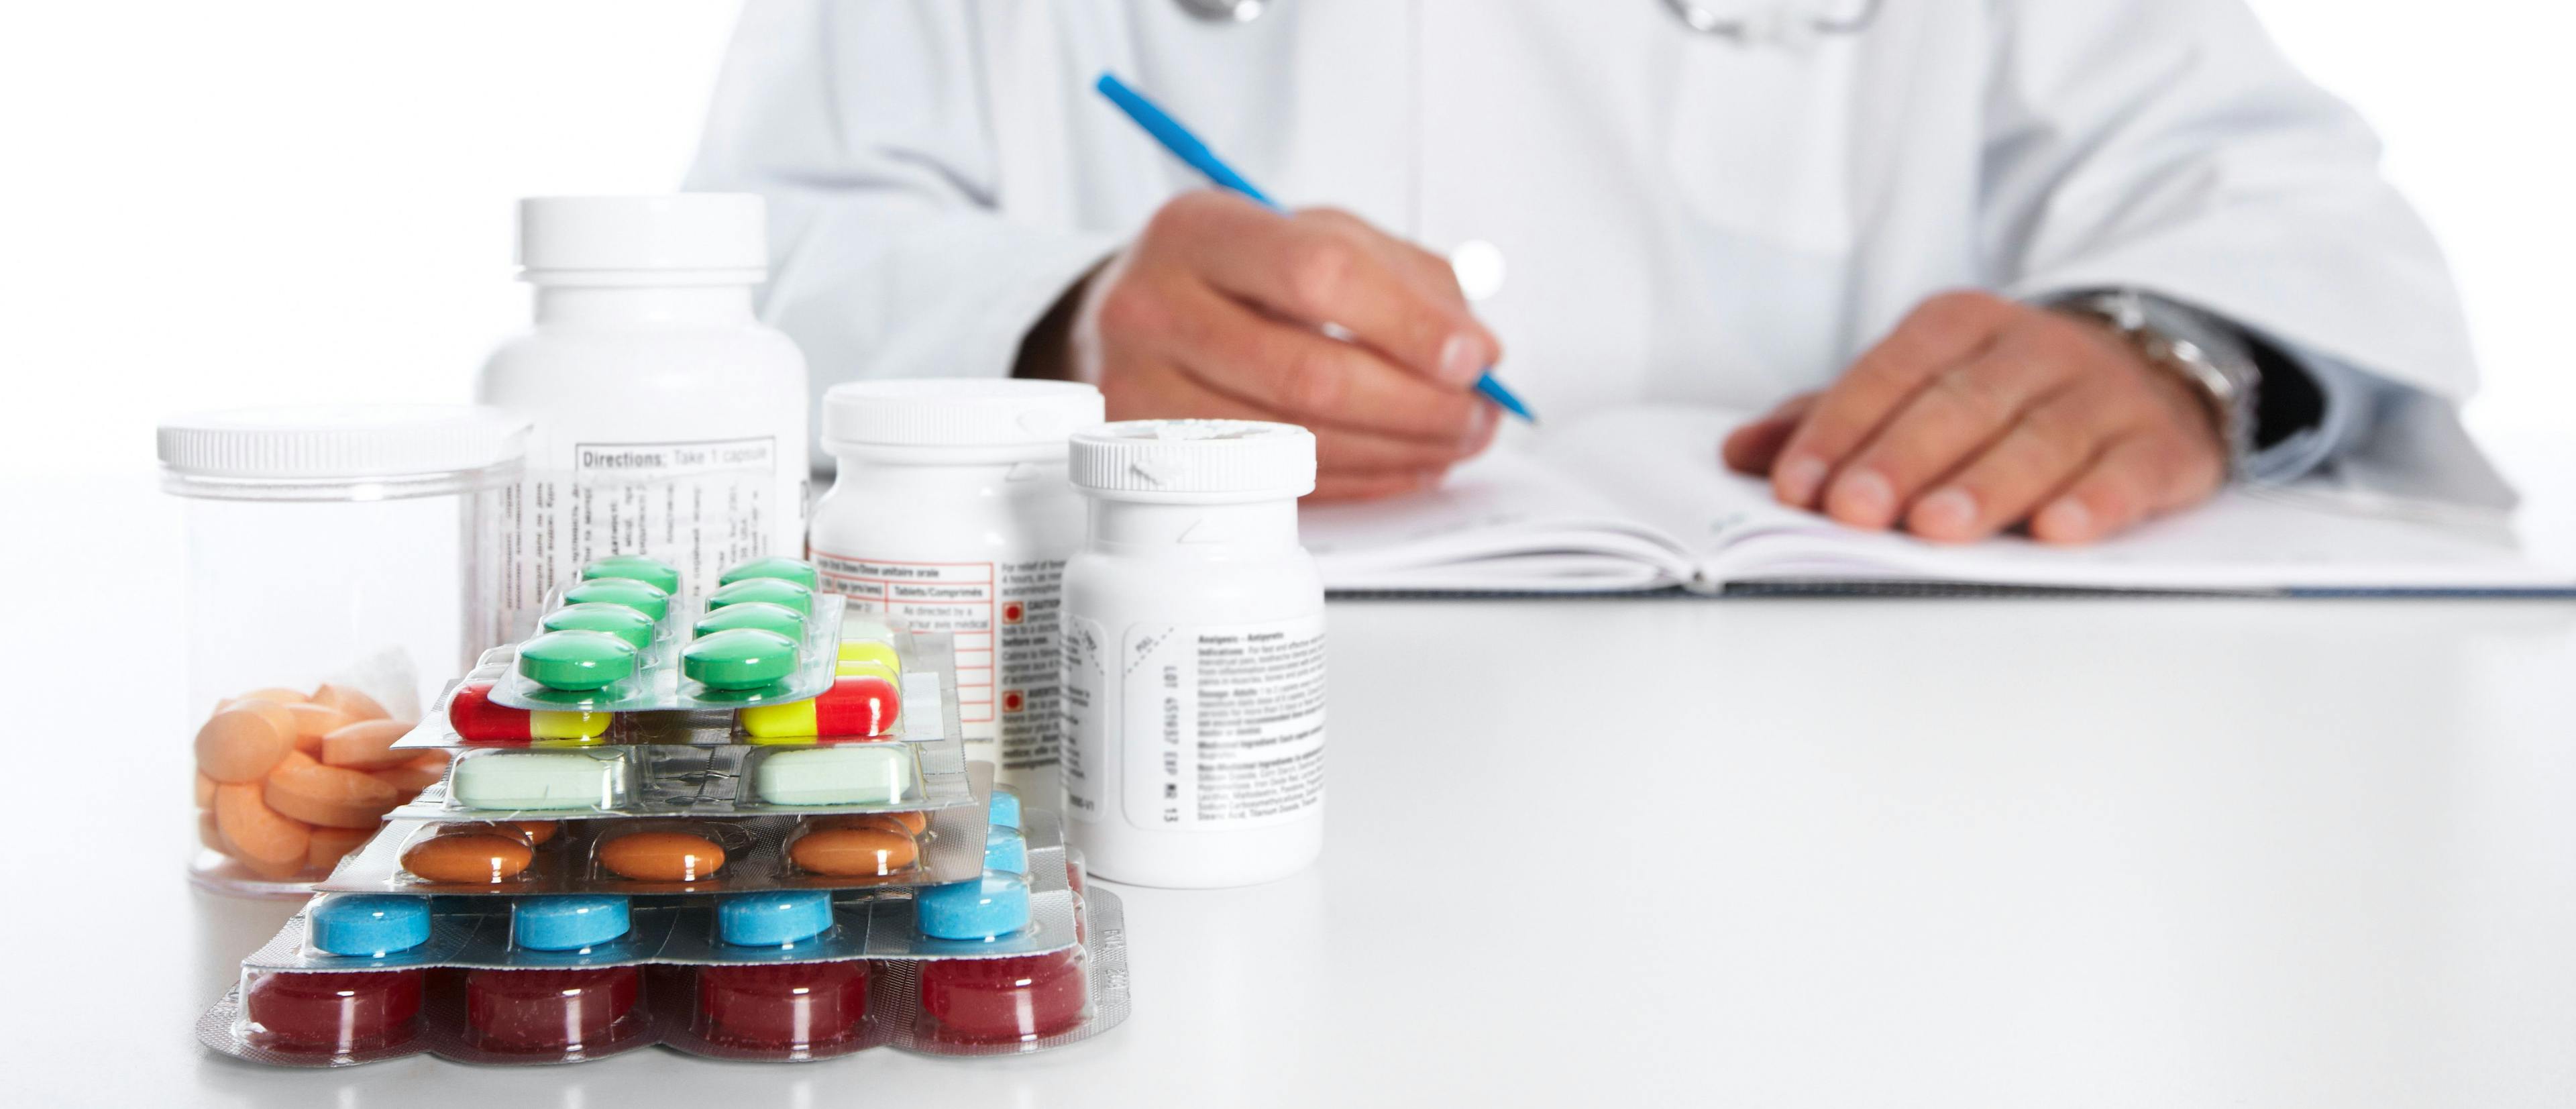 Documenting Indication Improves Antibiotic Prescribing